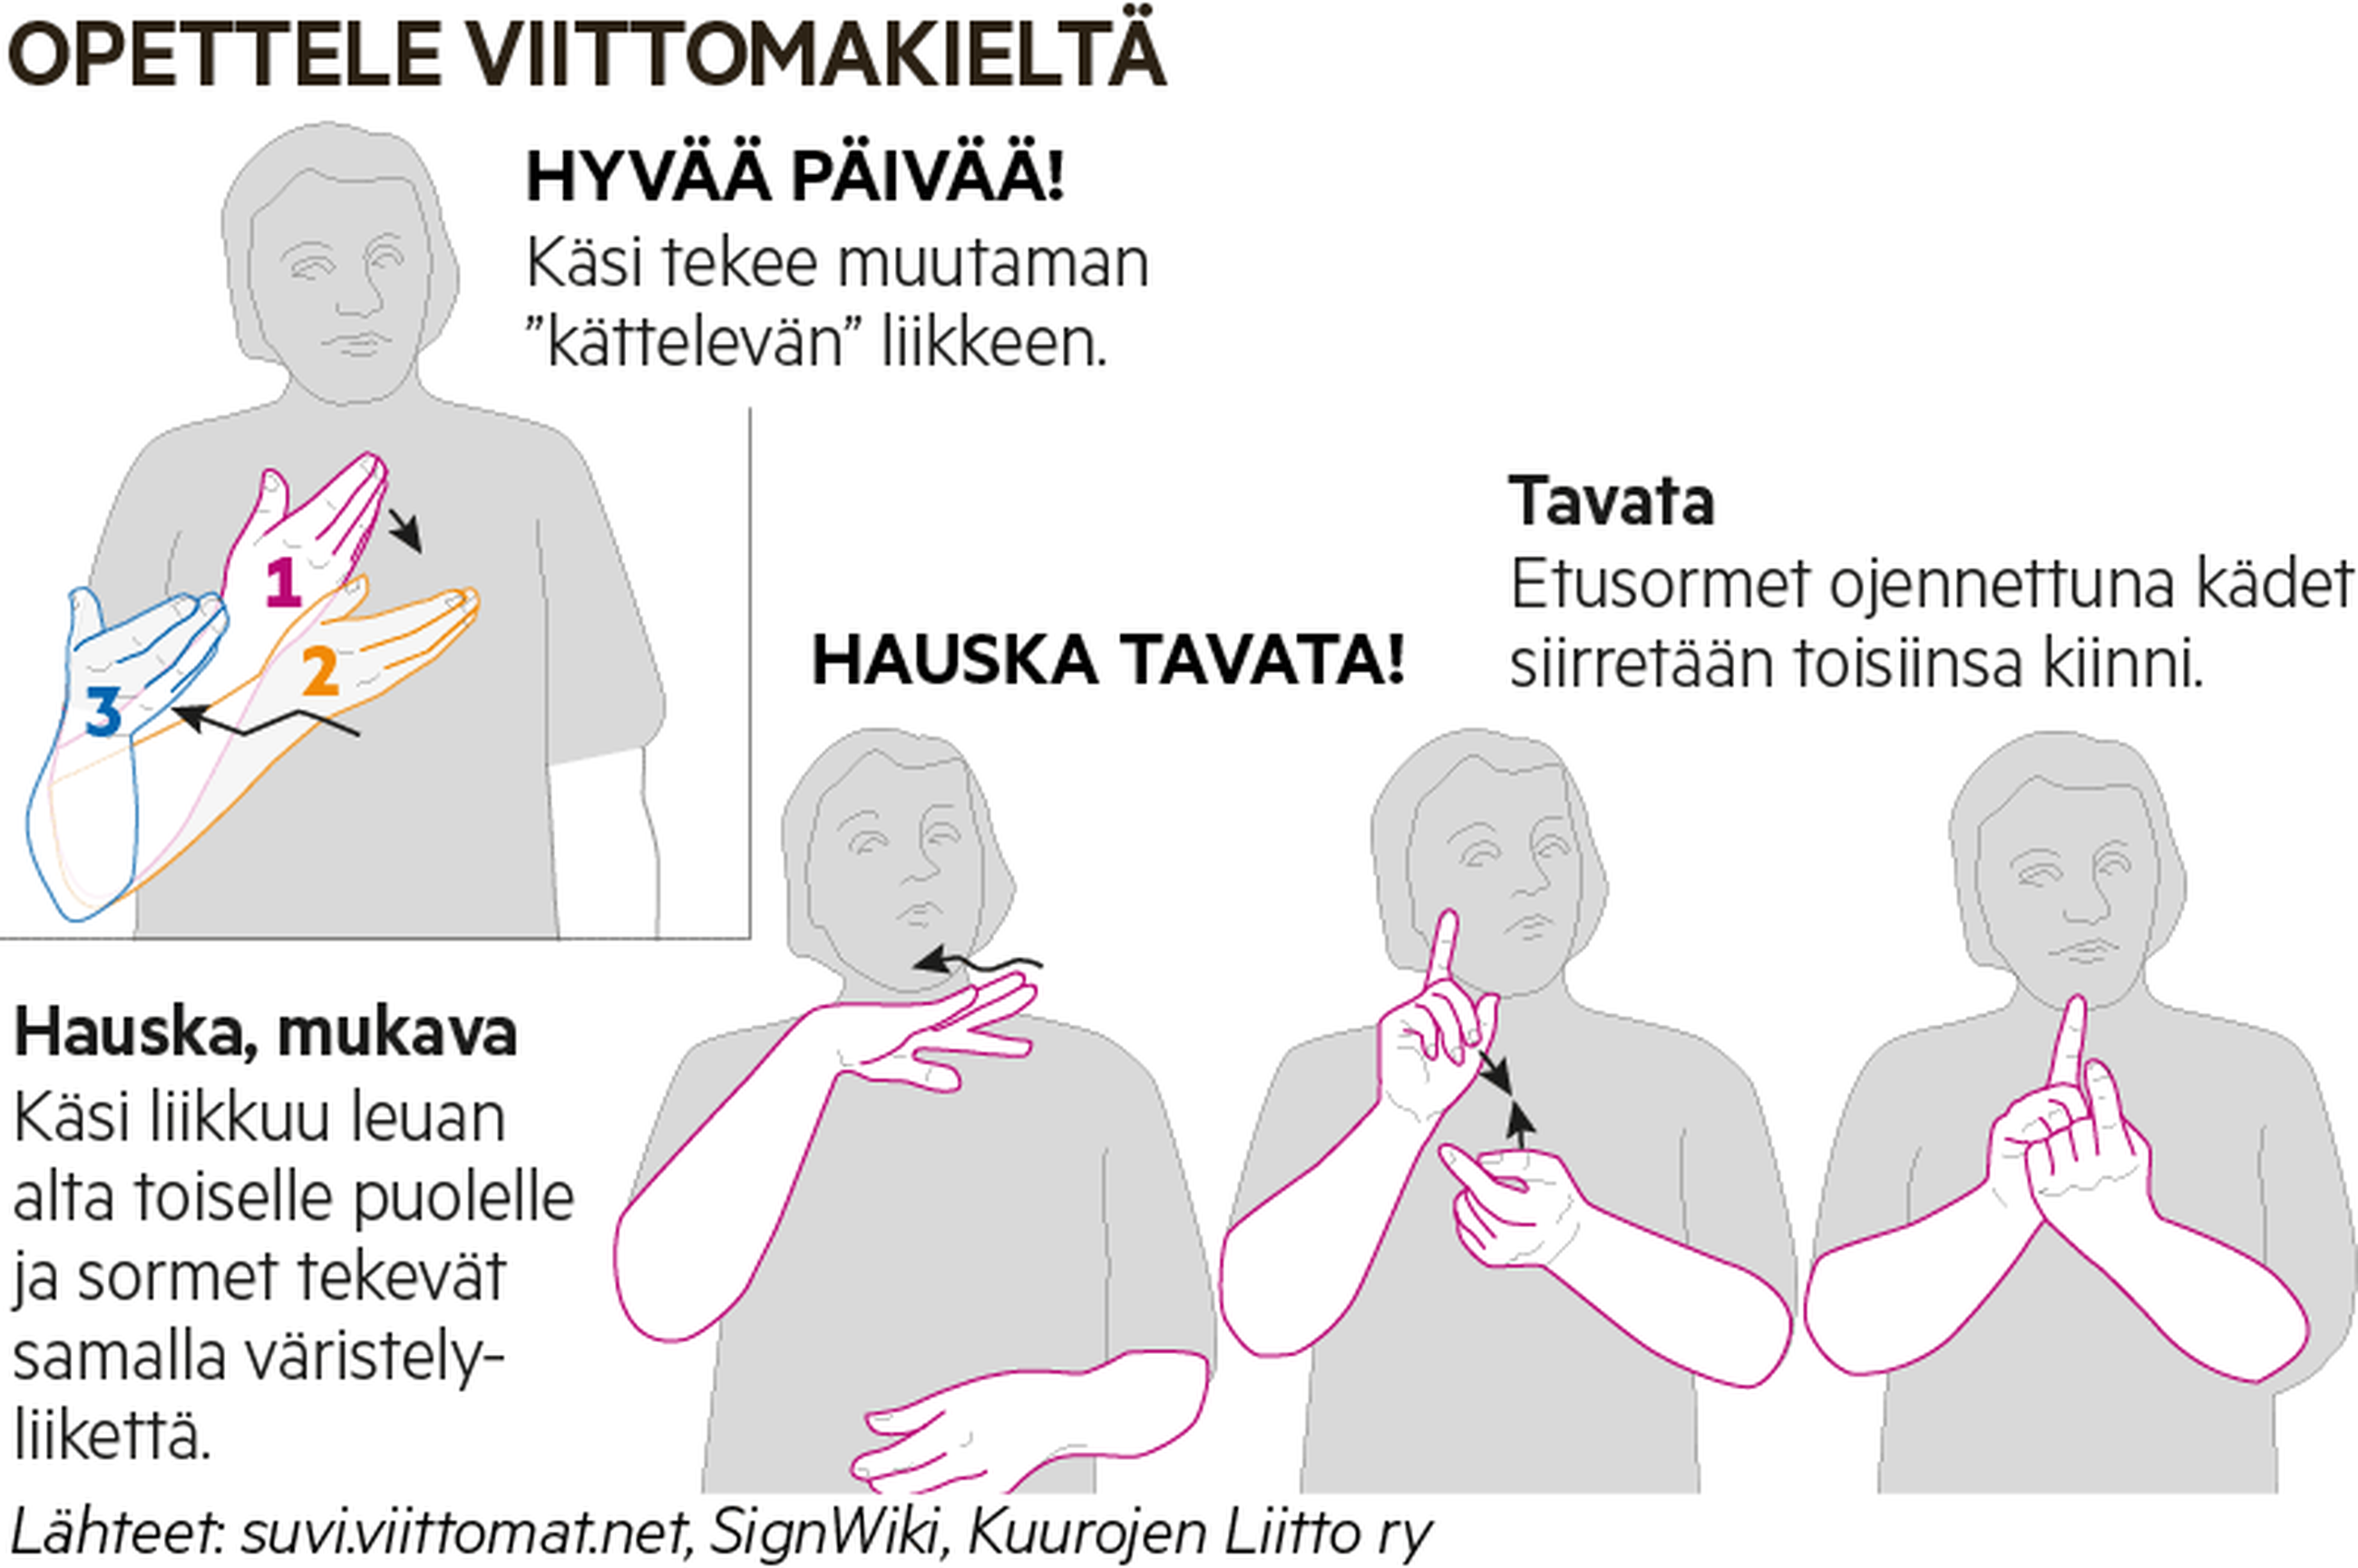 Suomalaista viittomakieltä käyttävien lasten määrä vähenee: 